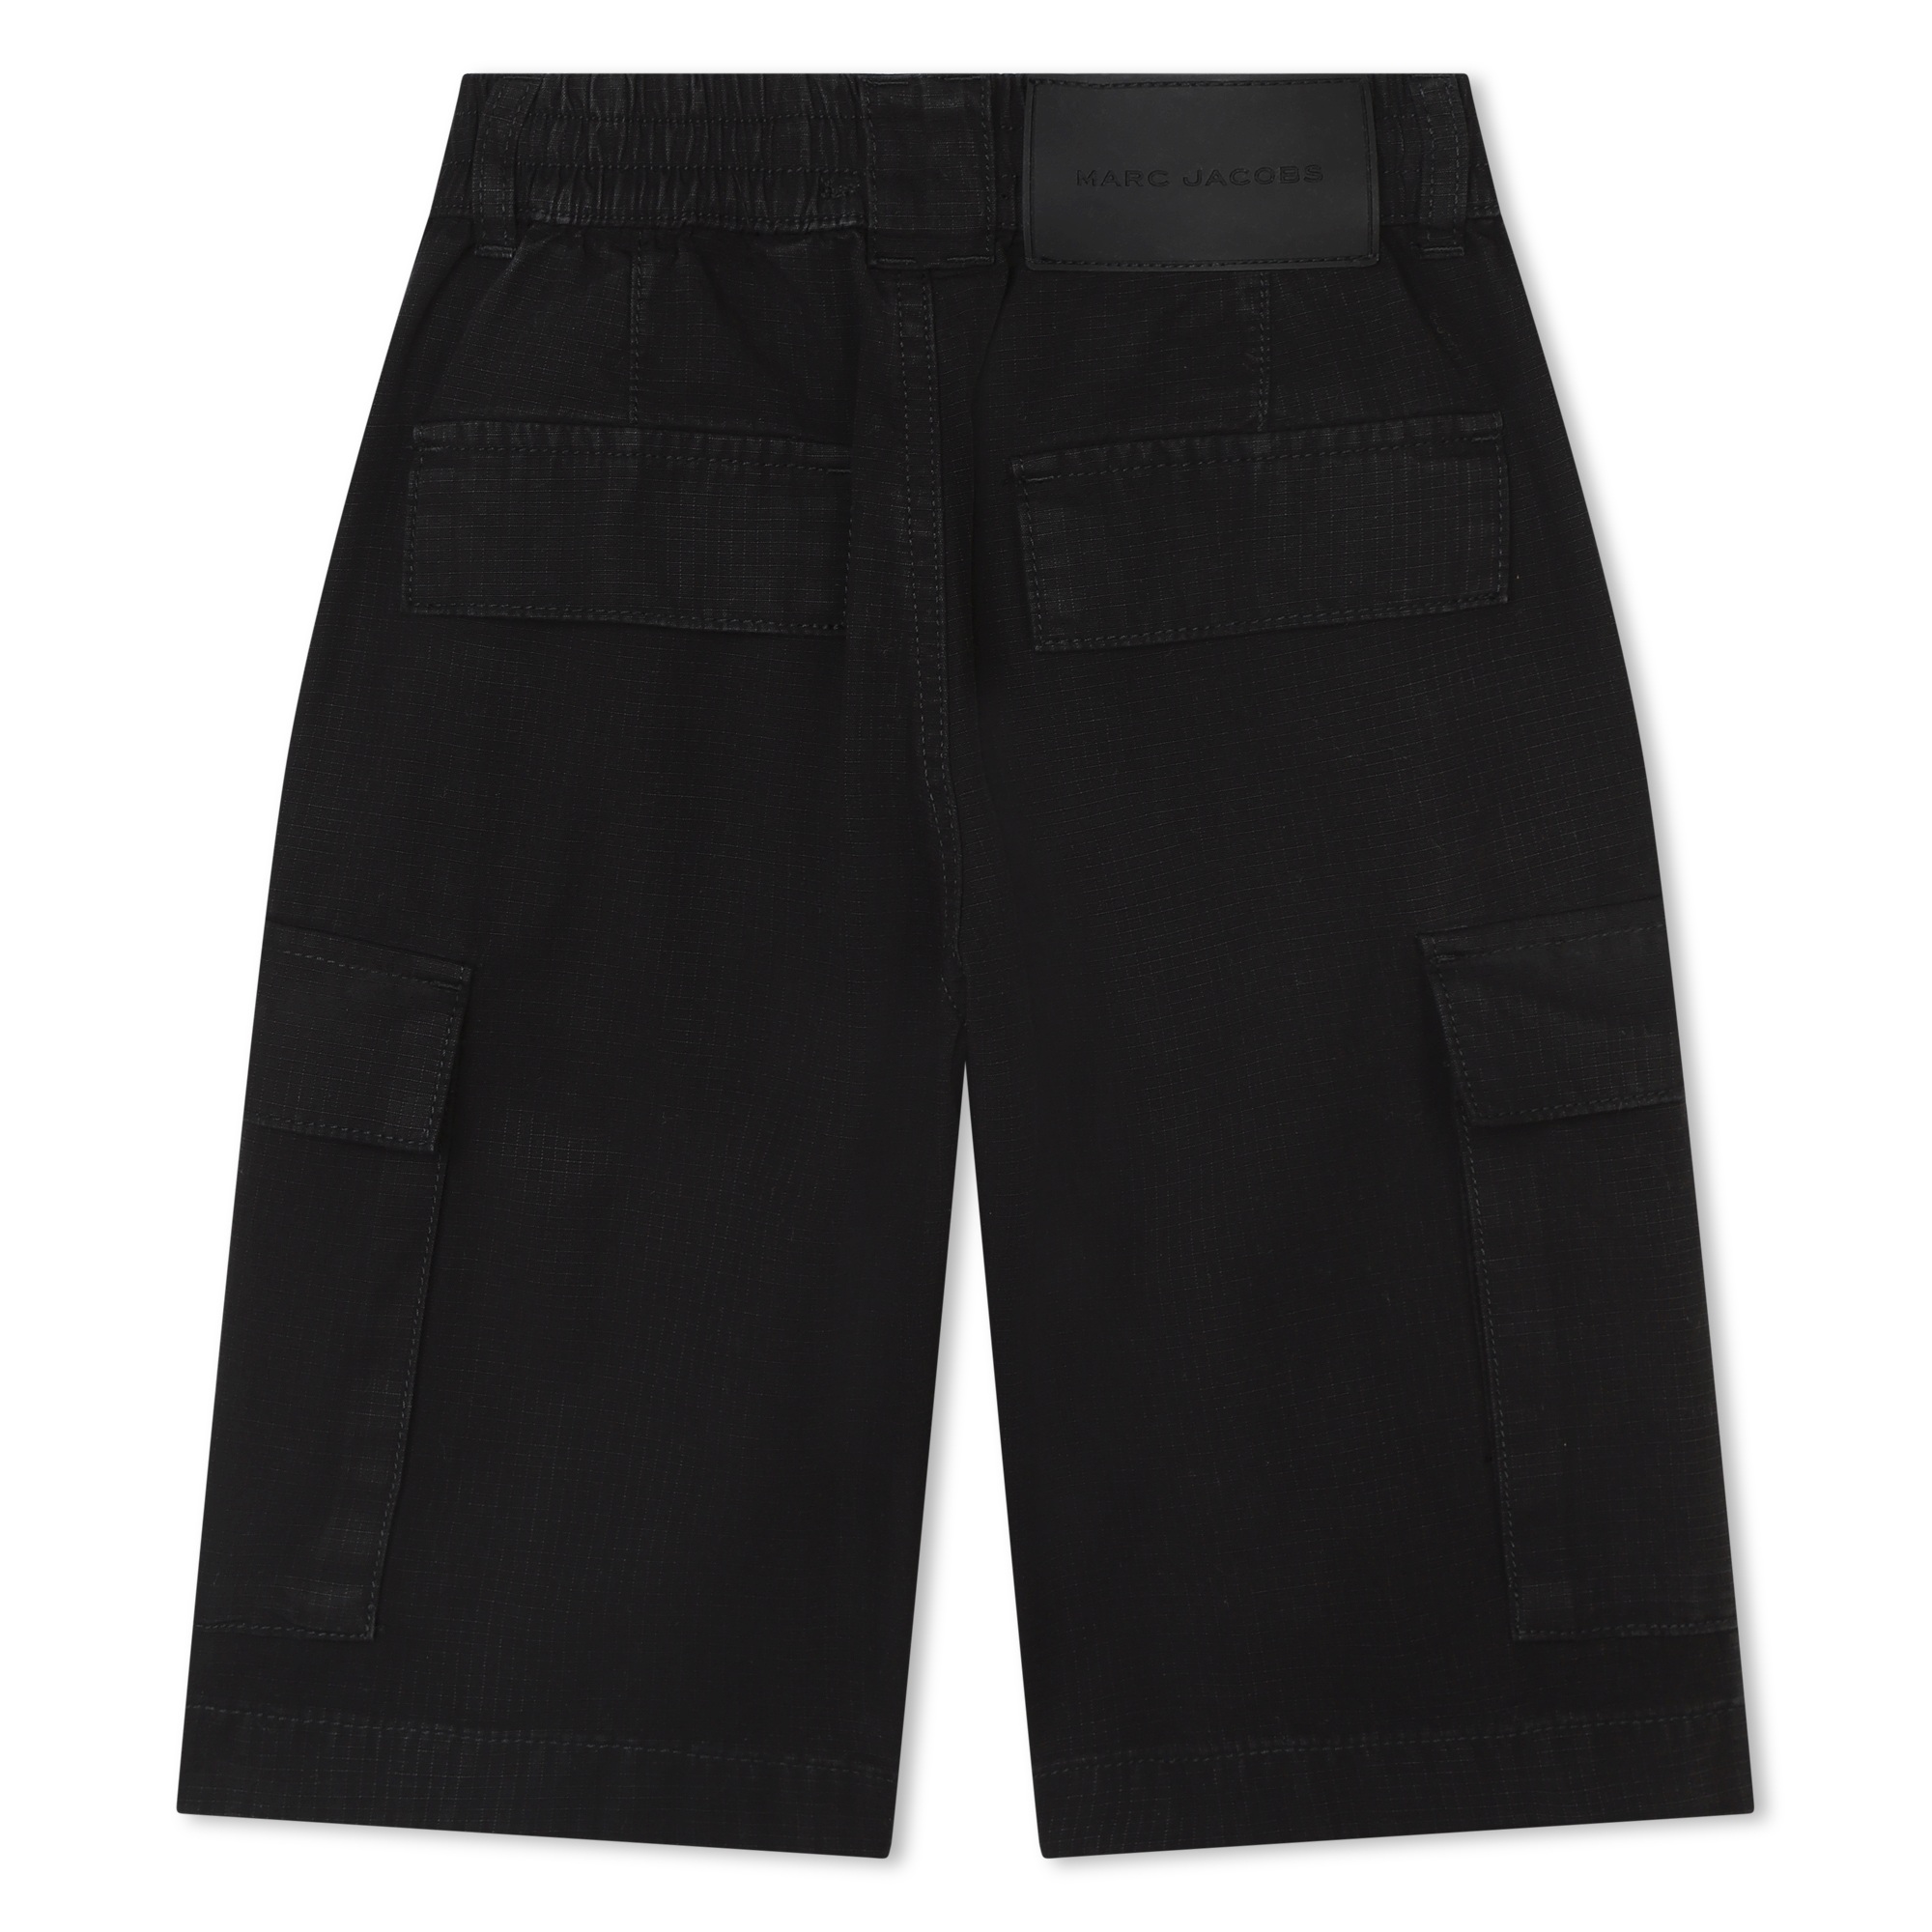 Bermuda-Shorts mit mehreren Taschen MARC JACOBS Für UNISEX